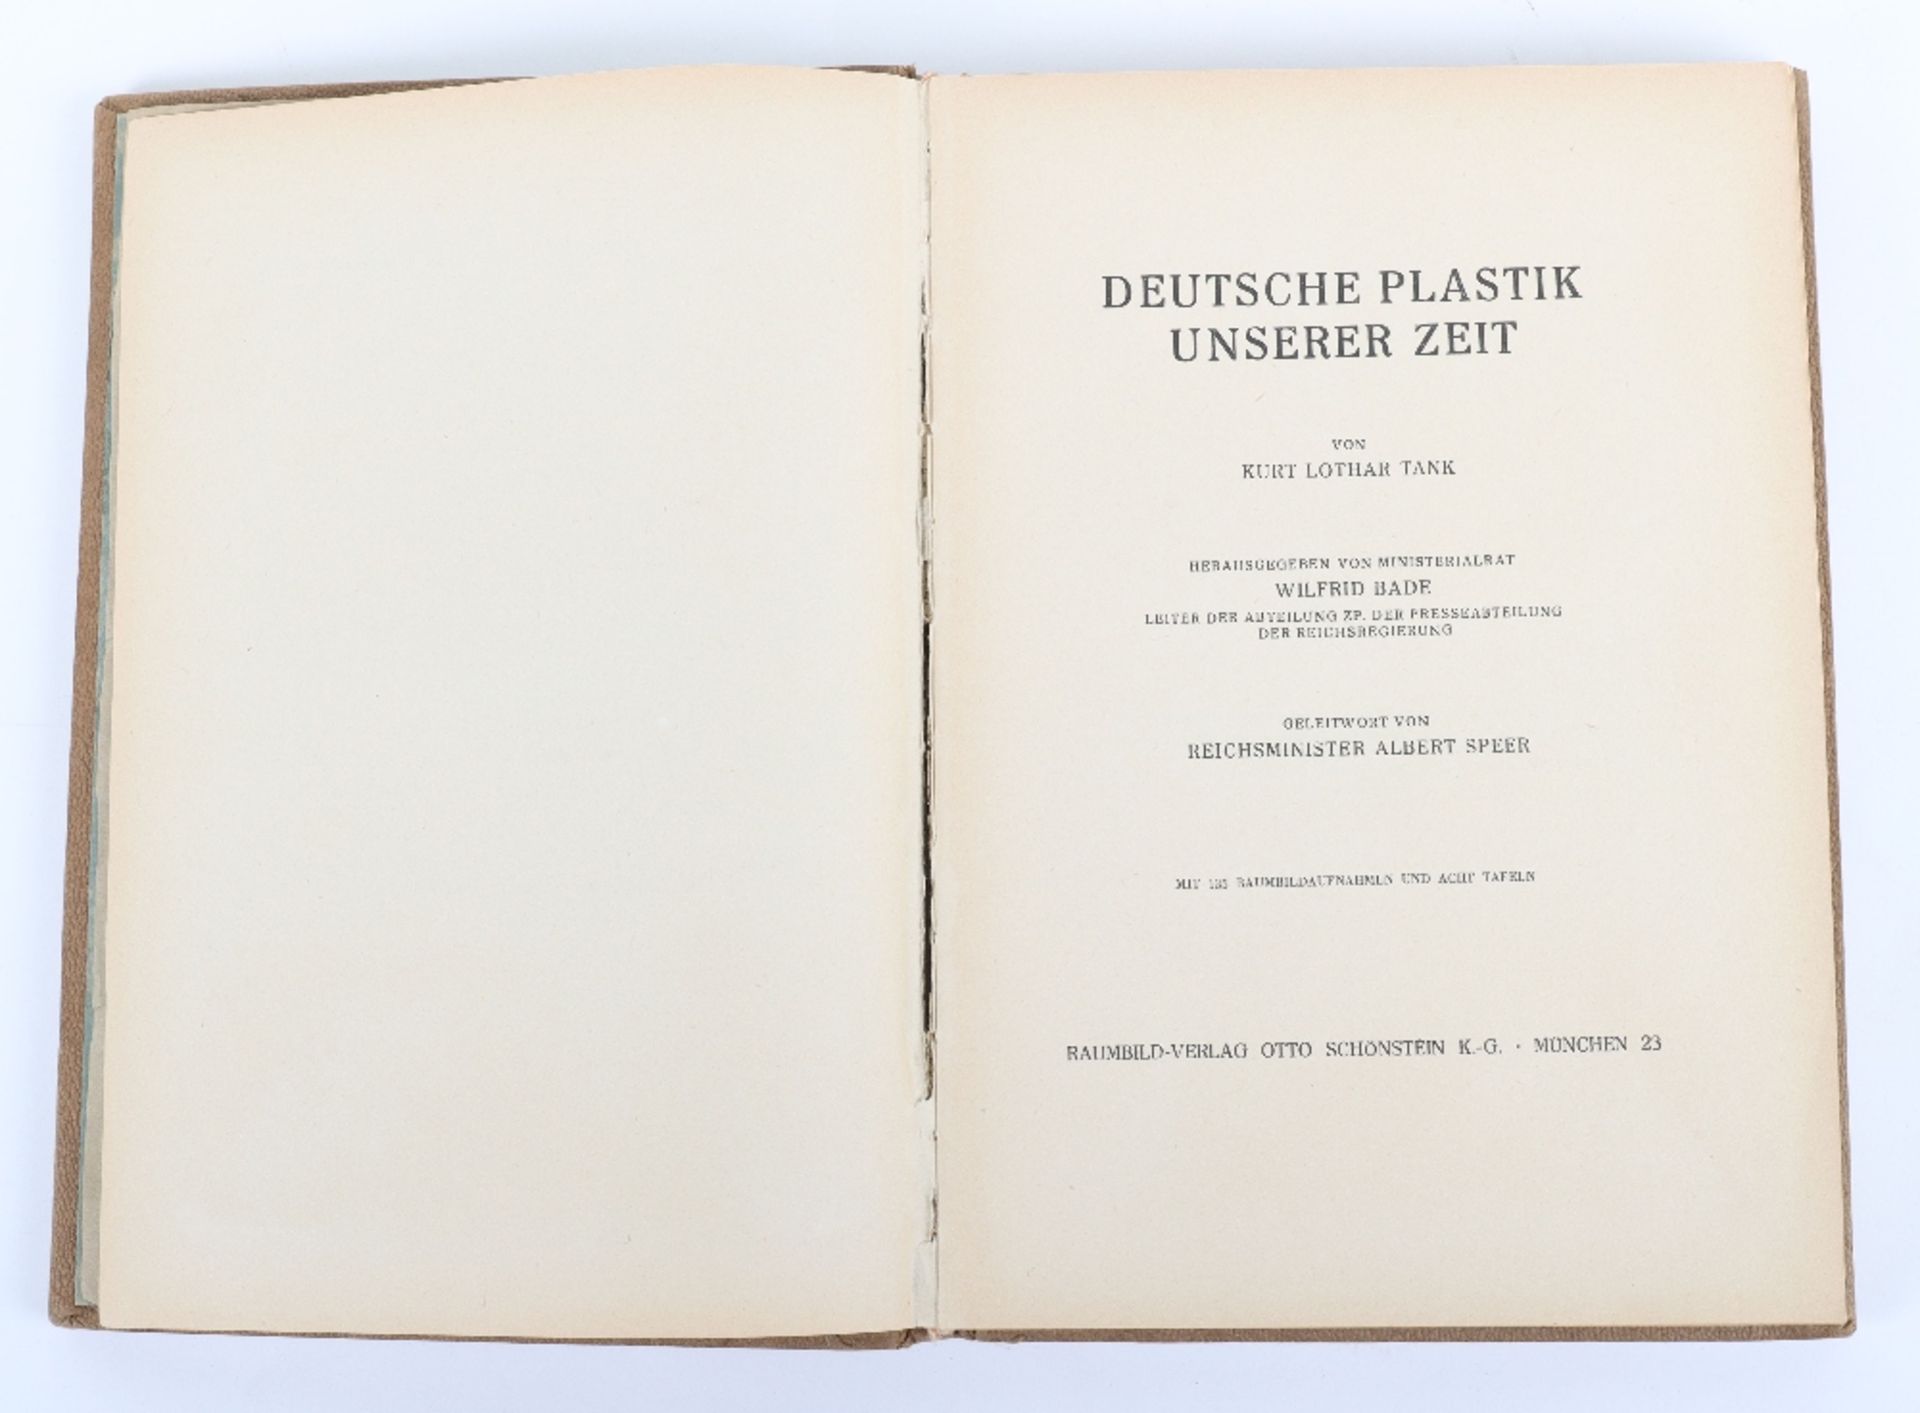 Third Reich Publication “Deutsche Plastik Unserer Zeit” Belonging to Hans Frank Governor General of - Image 3 of 5